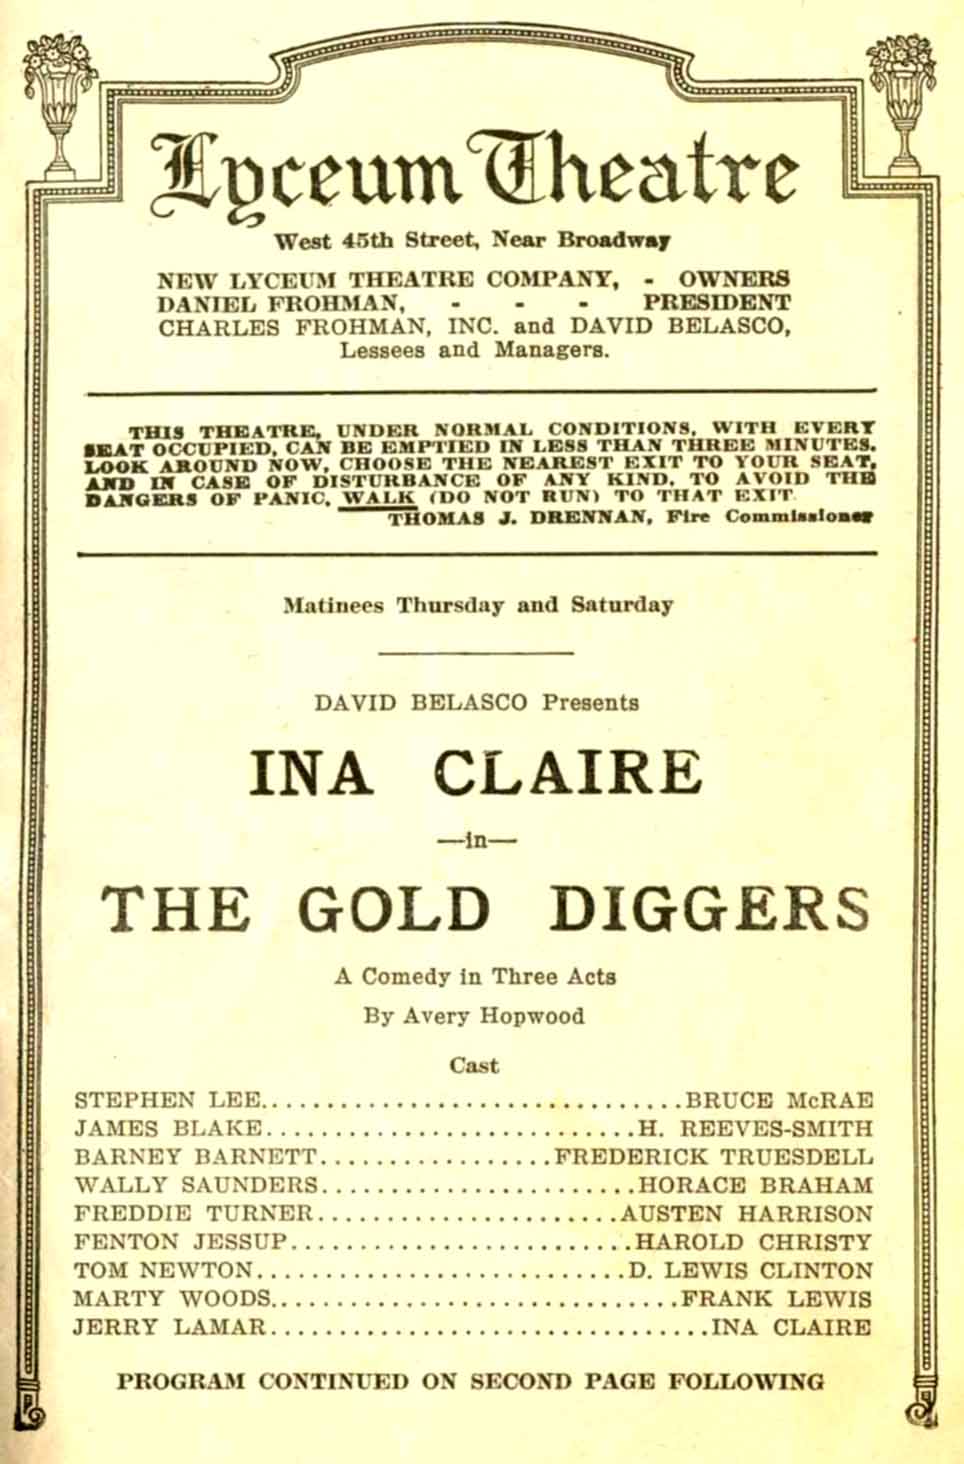 Gold digger - Wikipedia